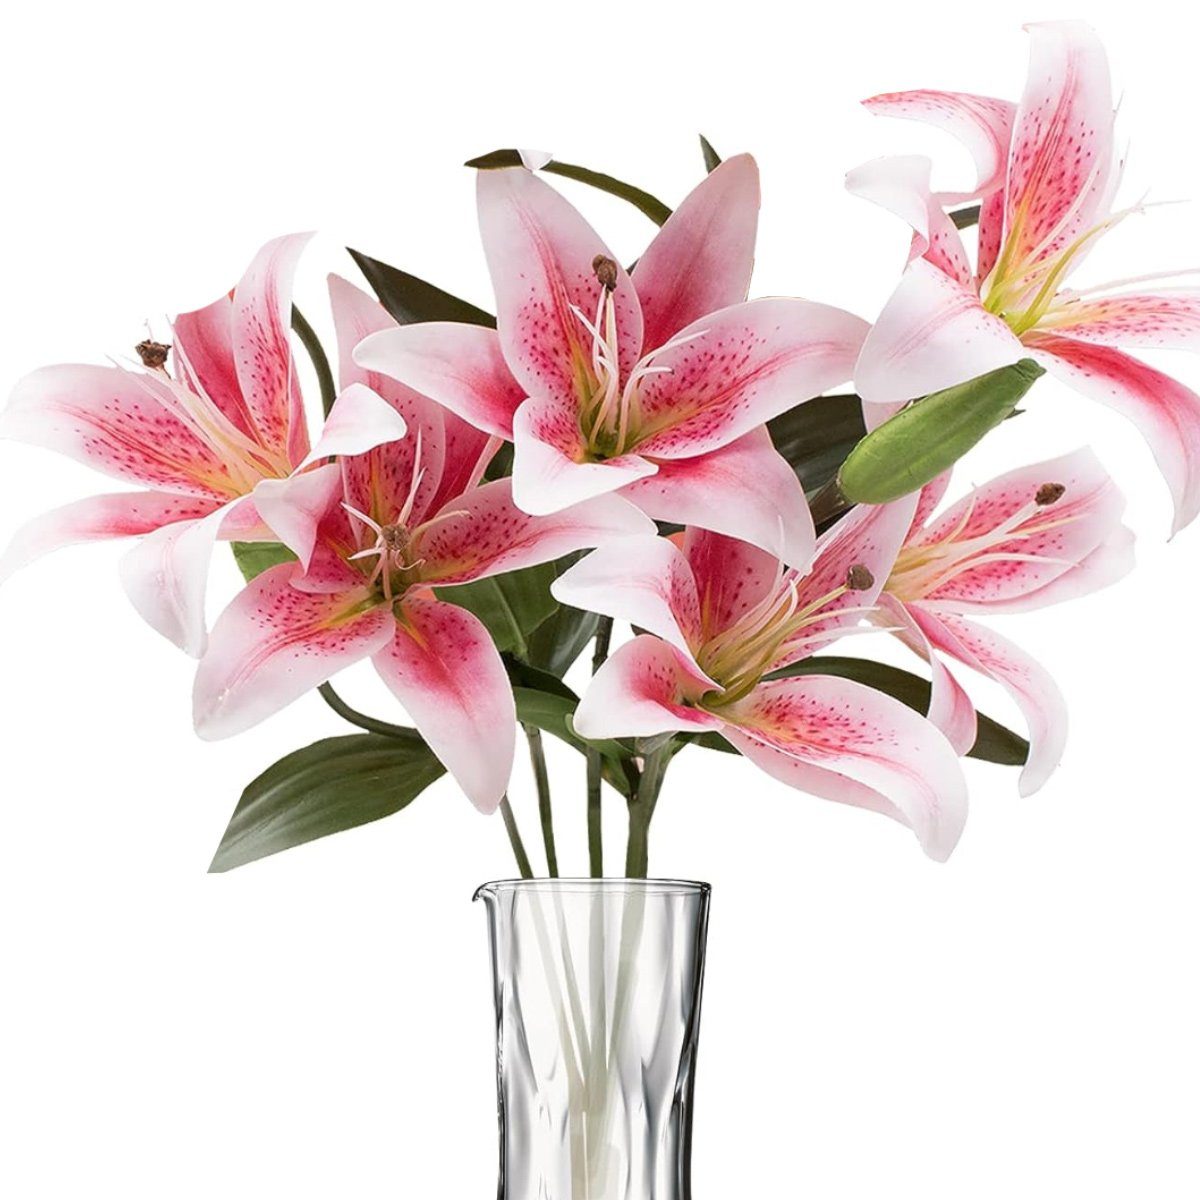 Künstliche Zimmerpflanze Künstlich Blume Familie Dekoration Party Hochzeit Hotel Dekoration, Jormftte rosa